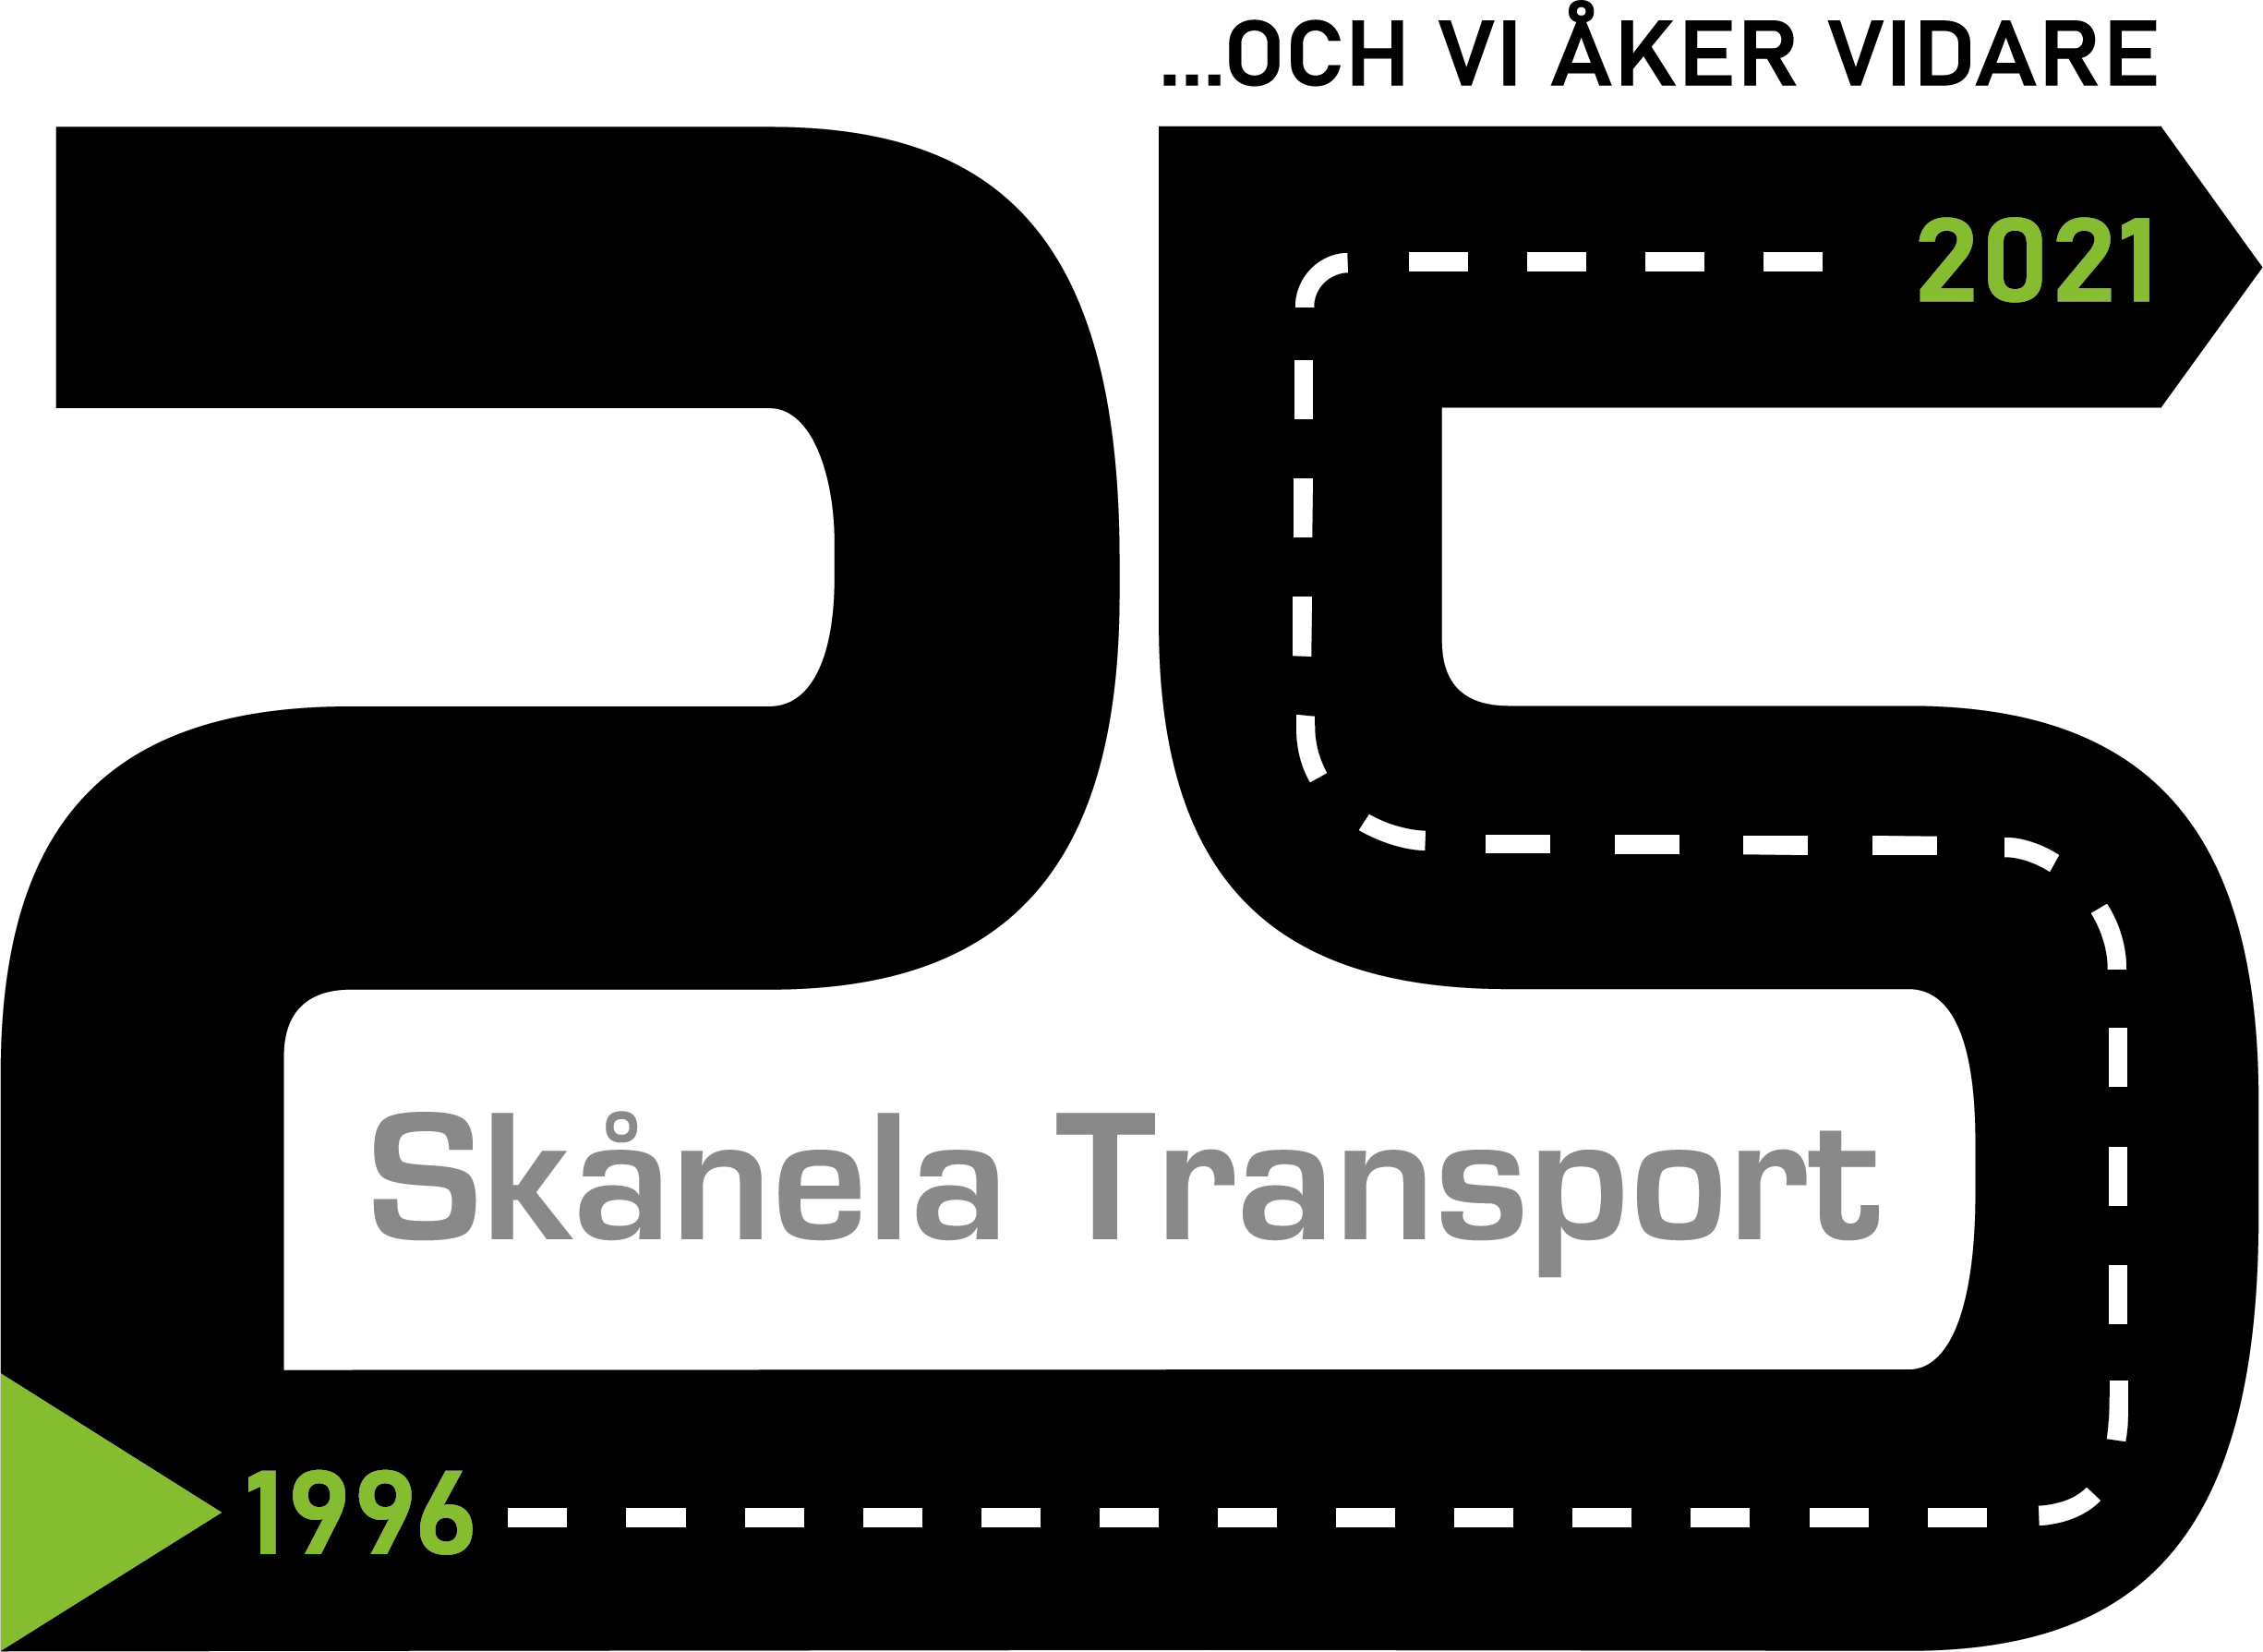 Siffran 25 formad som en bilväg med texten Skånela Transport 1996 och vi åker vidare 2021